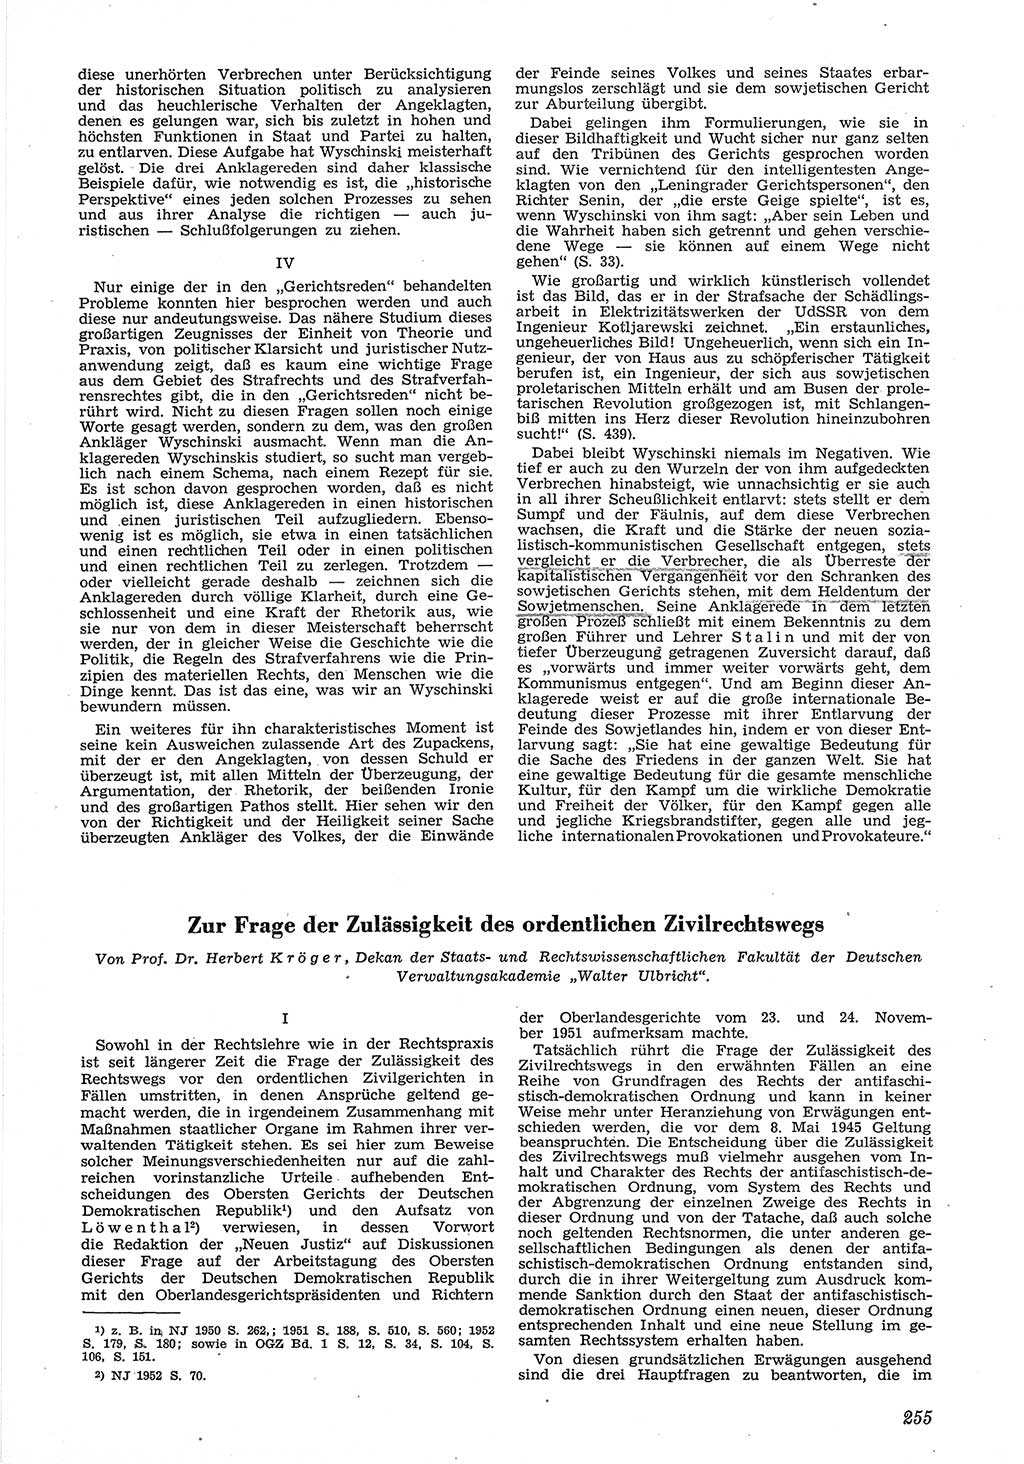 Neue Justiz (NJ), Zeitschrift für Recht und Rechtswissenschaft [Deutsche Demokratische Republik (DDR)], 6. Jahrgang 1952, Seite 255 (NJ DDR 1952, S. 255)